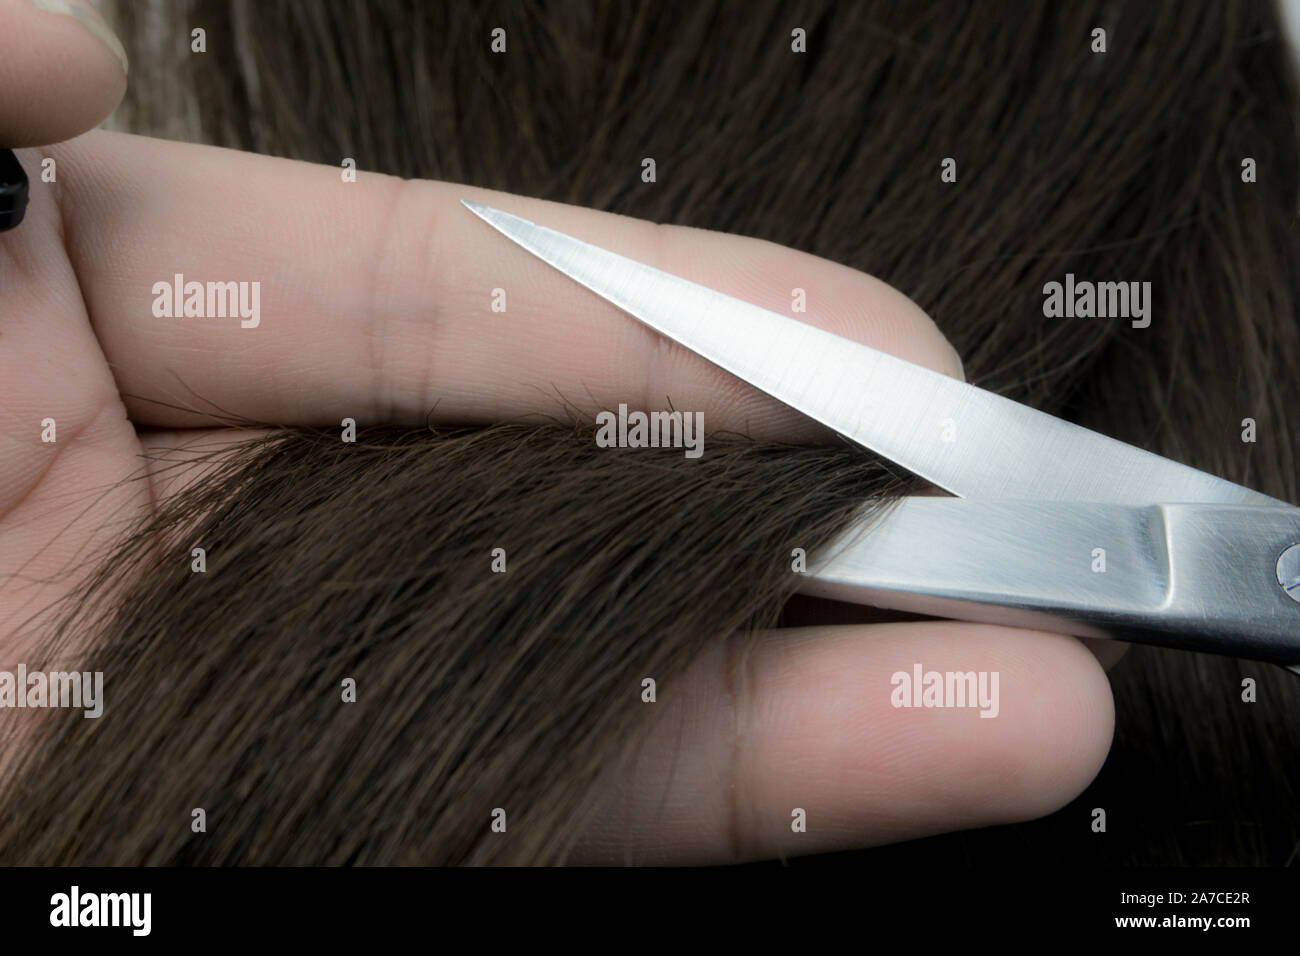 Salon de coiffure ciseaux produit comb Banque D'Images